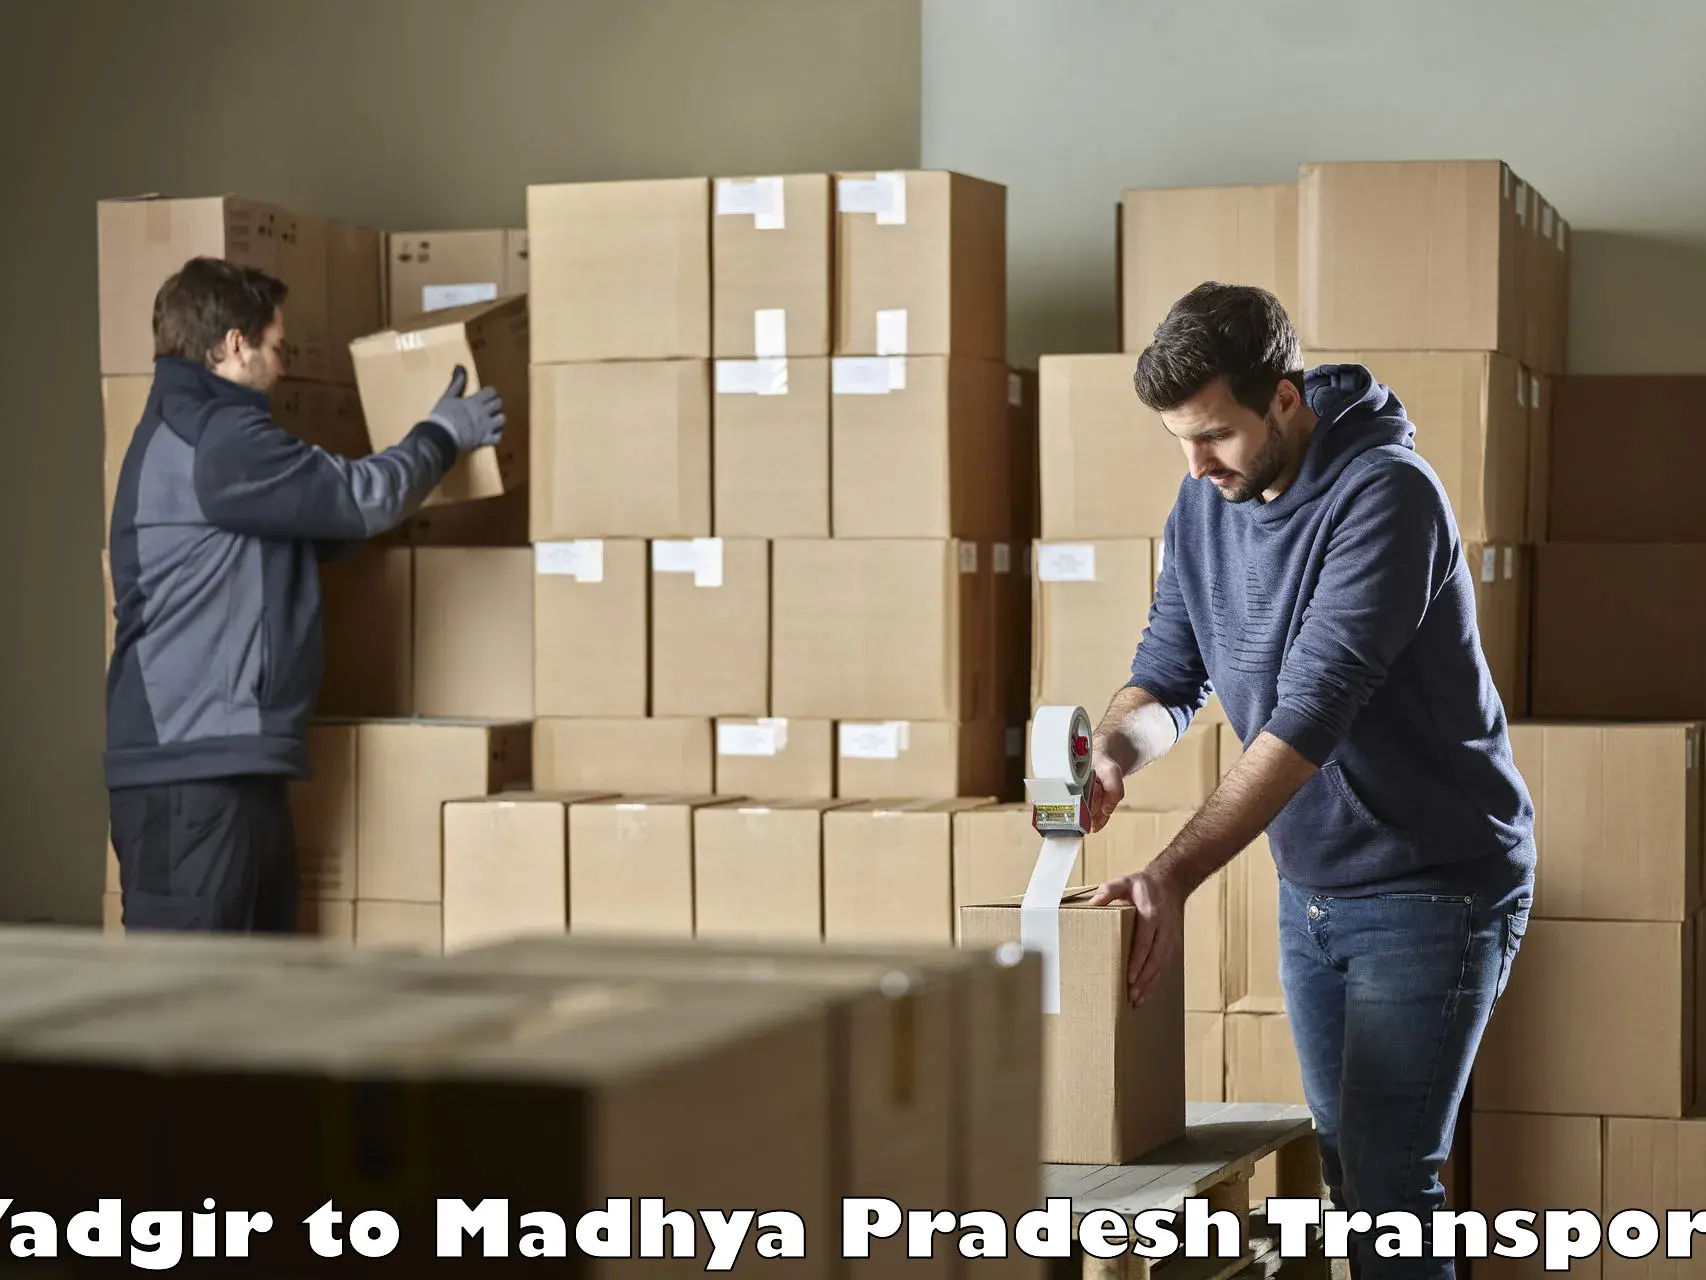 Shipping partner Yadgir to Chitrangi